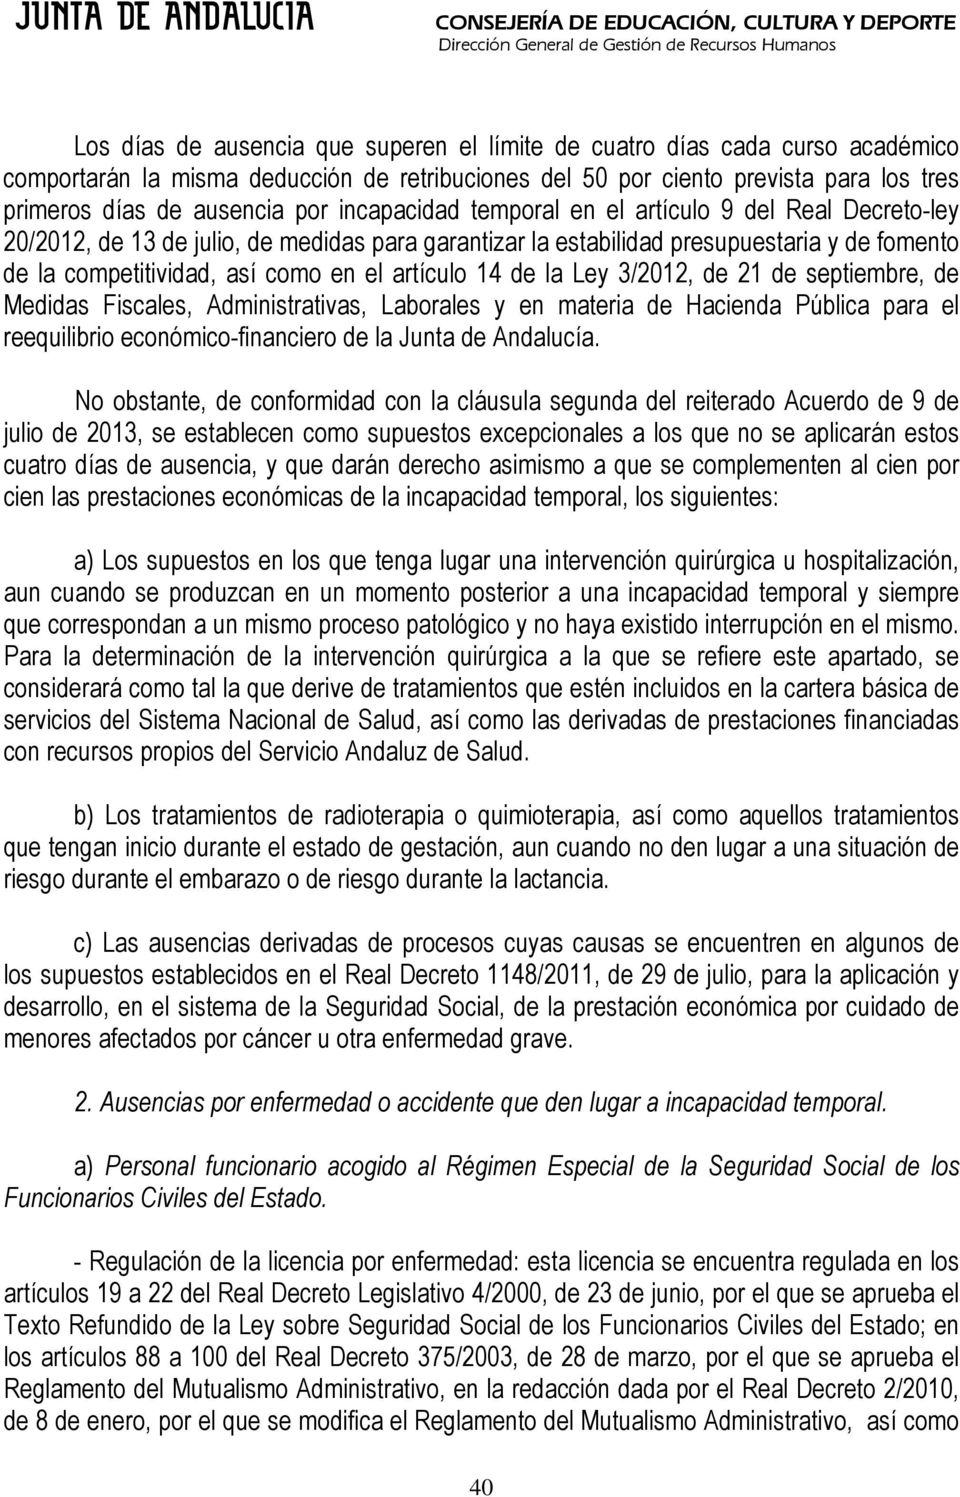 14 de la Ley 3/2012, de 21 de septiembre, de Medidas Fiscales, Administrativas, Laborales y en materia de Hacienda Pública para el reequilibrio económico-financiero de la Junta de Andalucía.